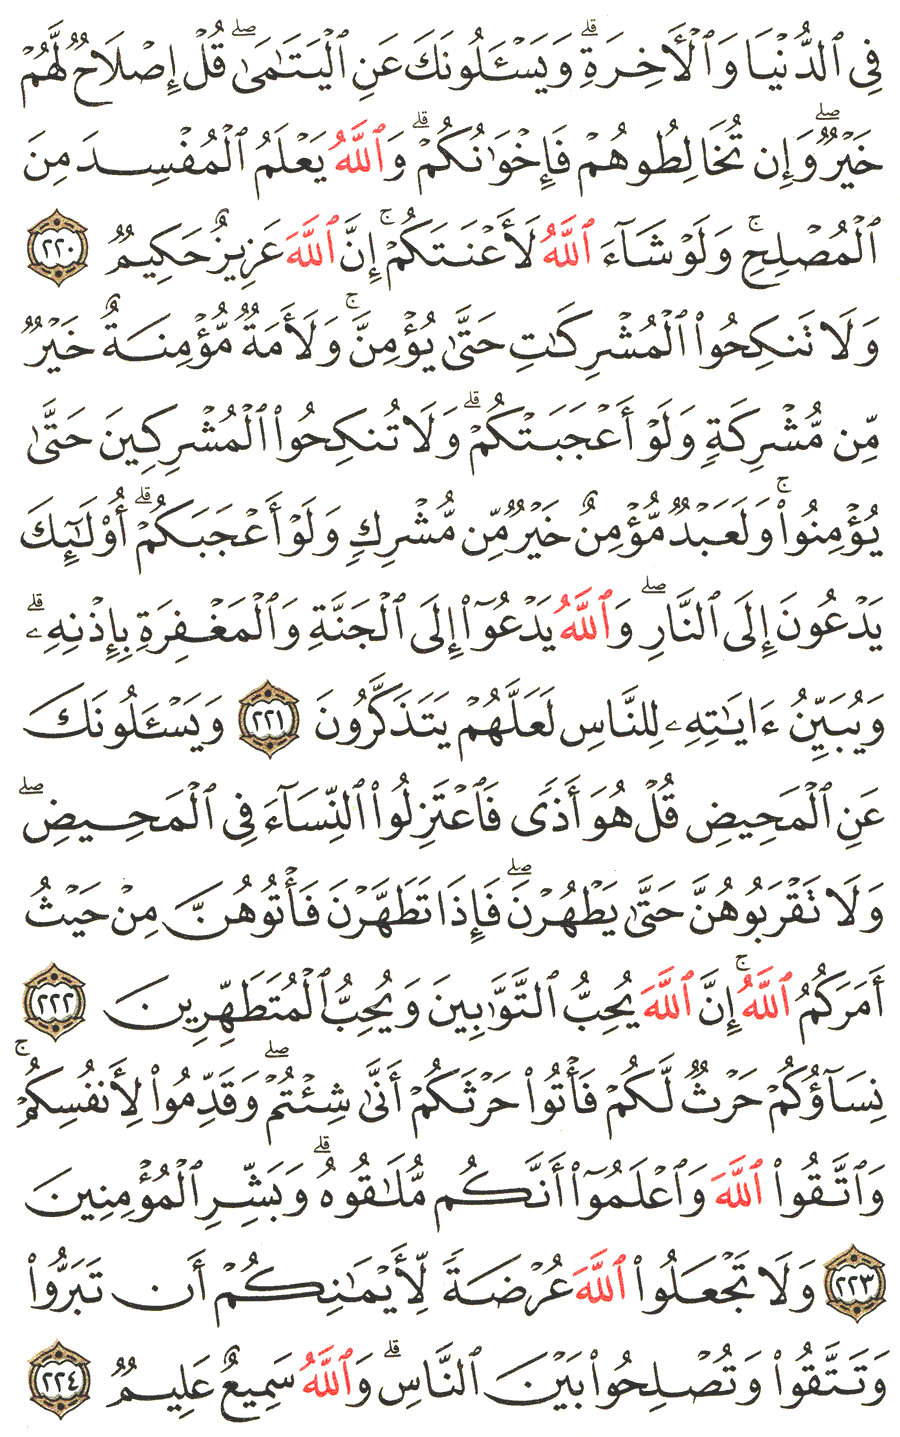 الصفحة رقم  35 من القرآن الكريم مكتوبة من المصحف